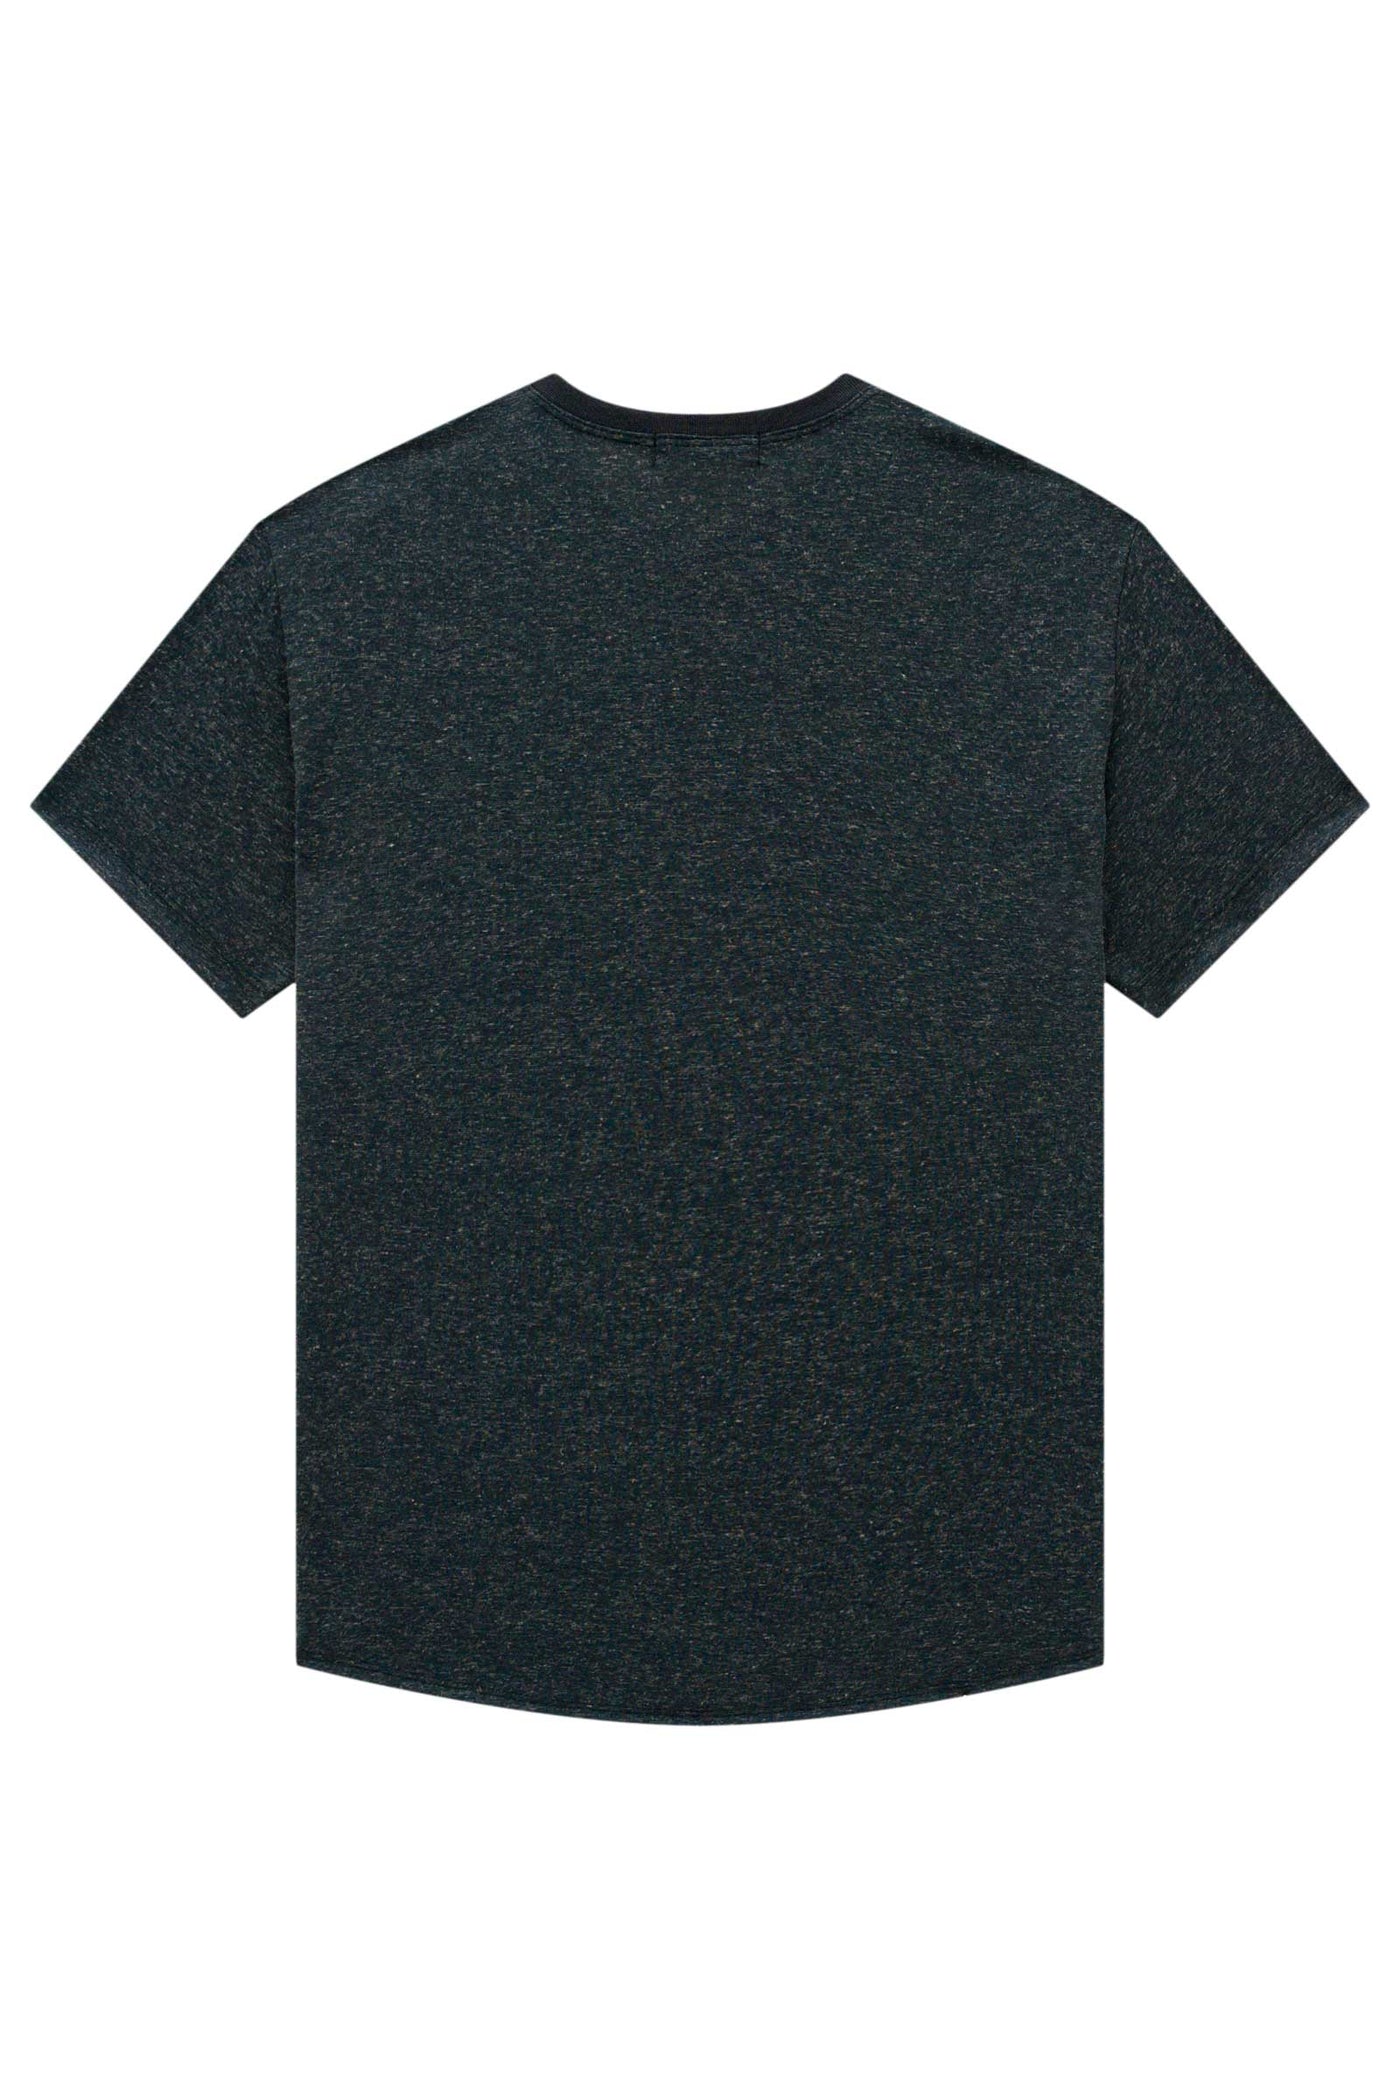 Conjunto de Camiseta em Malha Soft e Bermuda em Sarja Empapelada Moore 66463 Johnny Fox